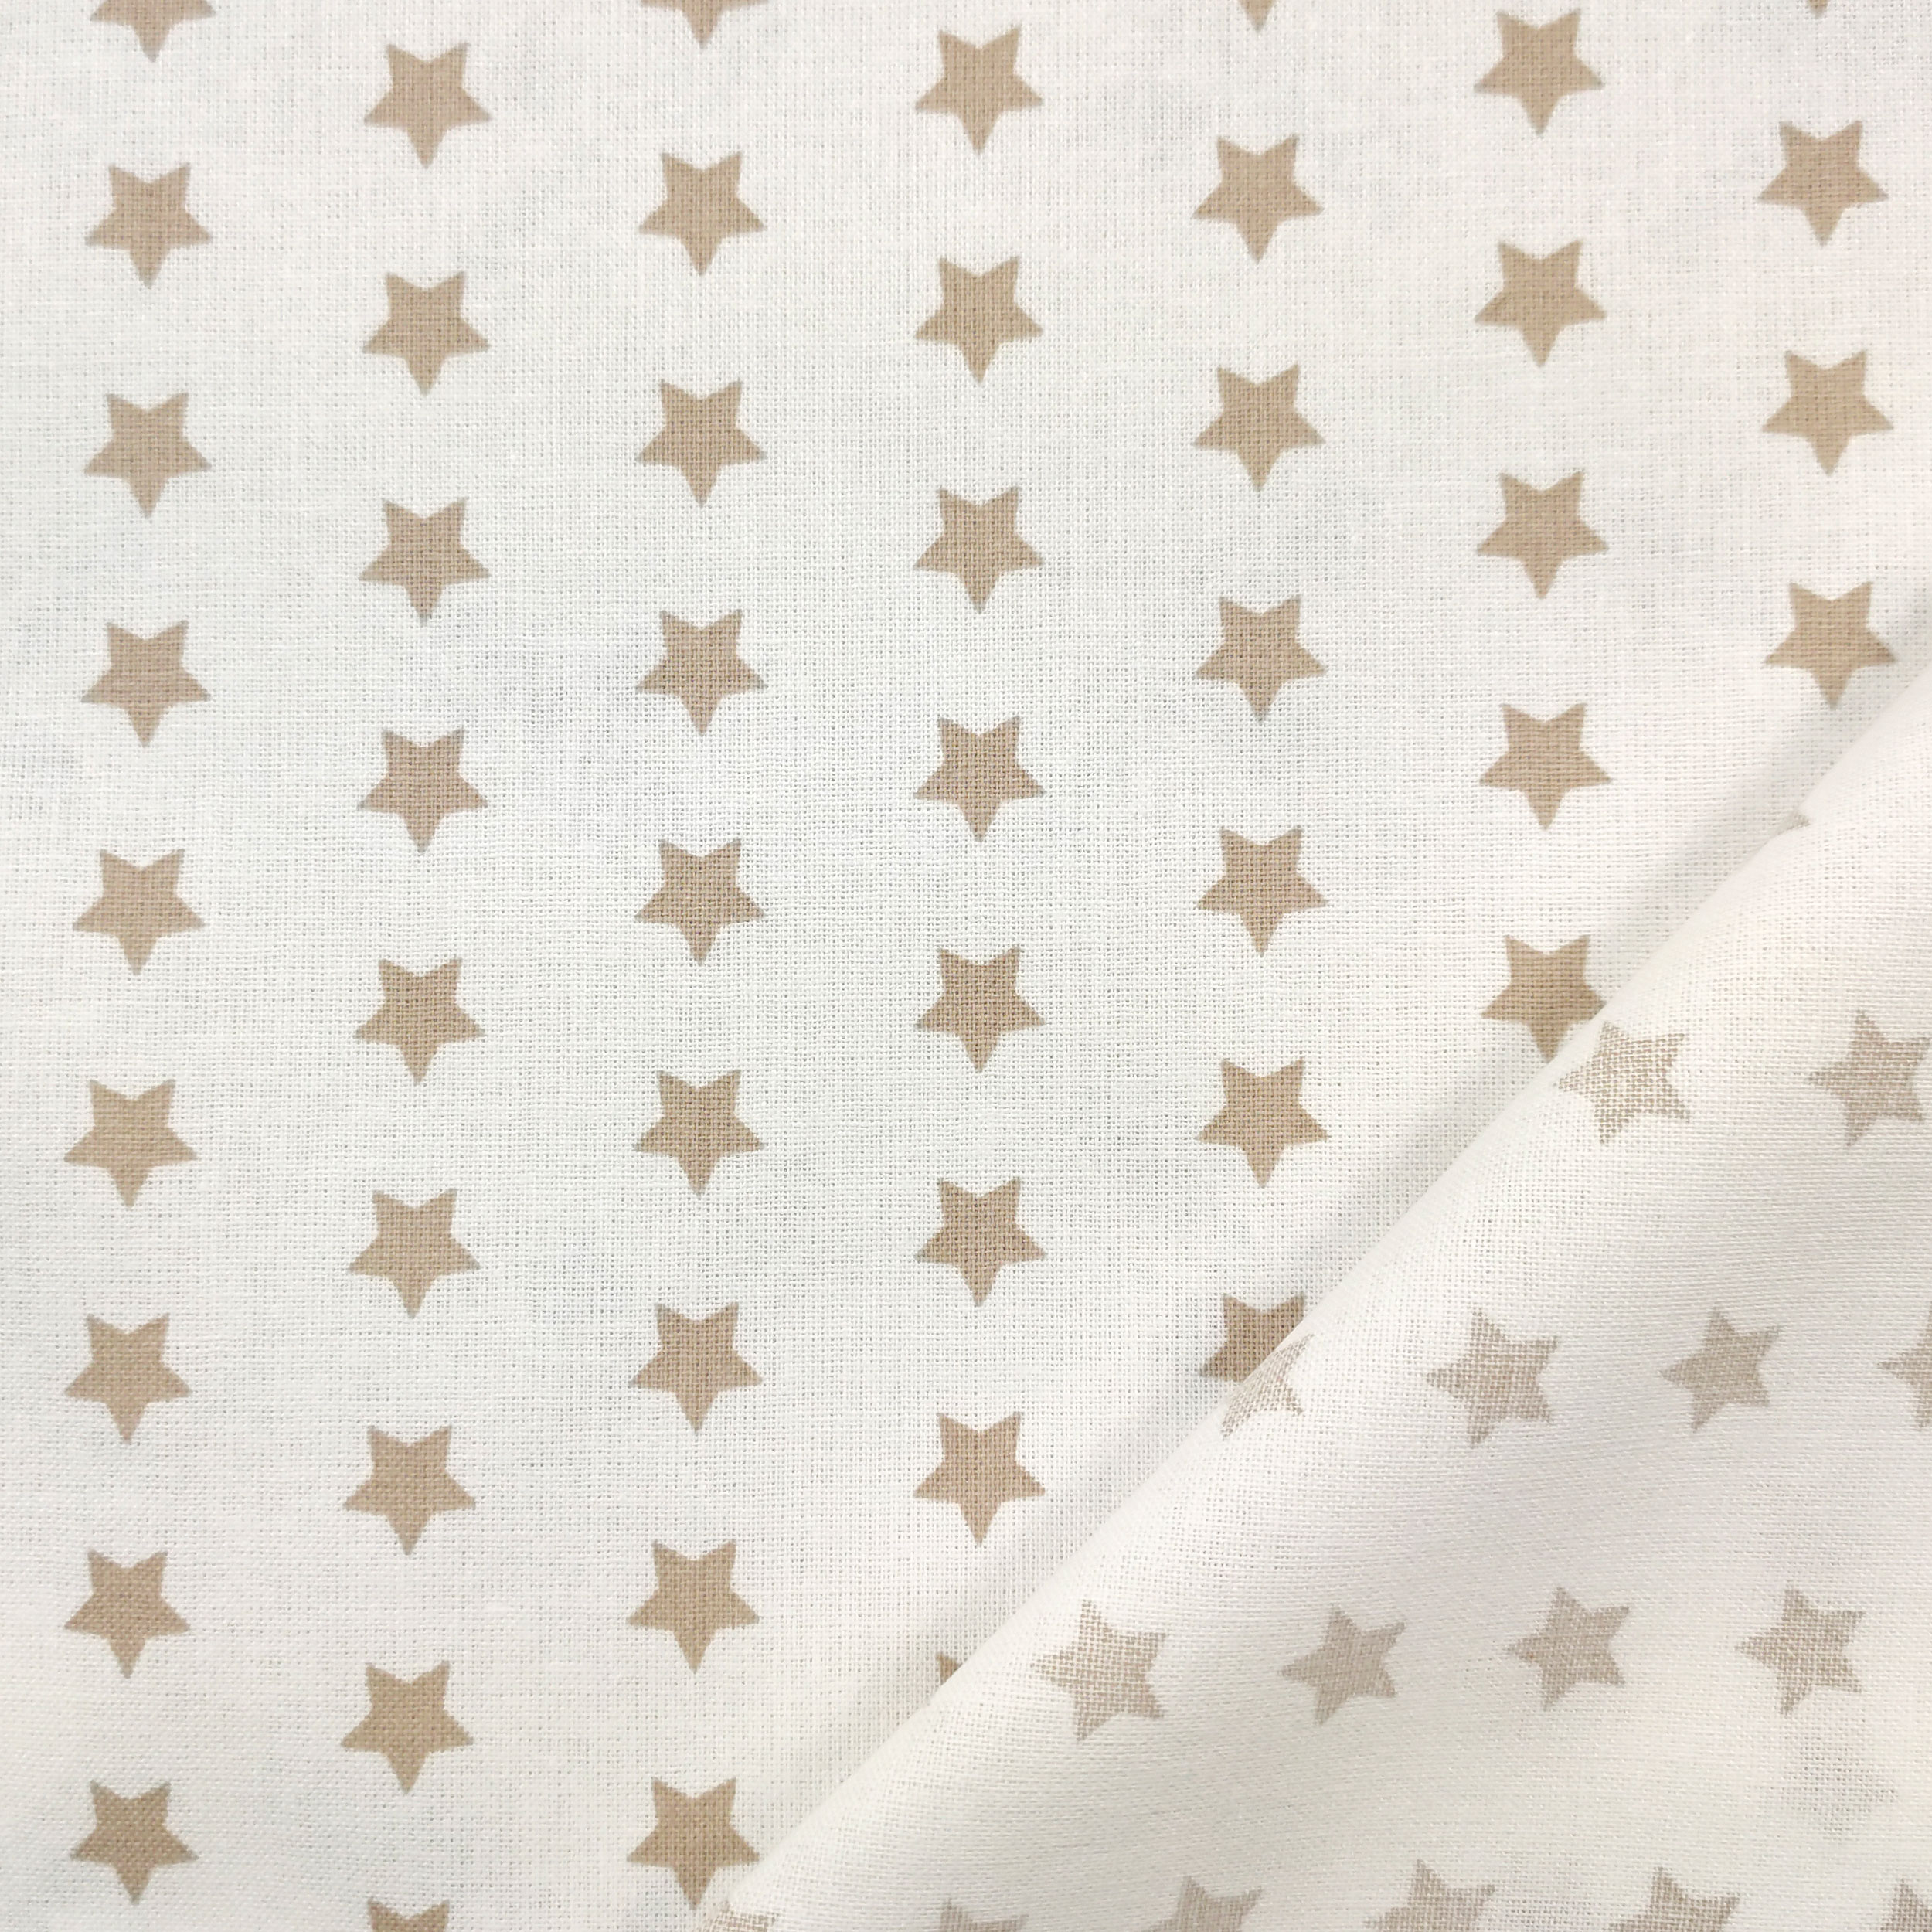 cotone con stelle beige sfondo bianco